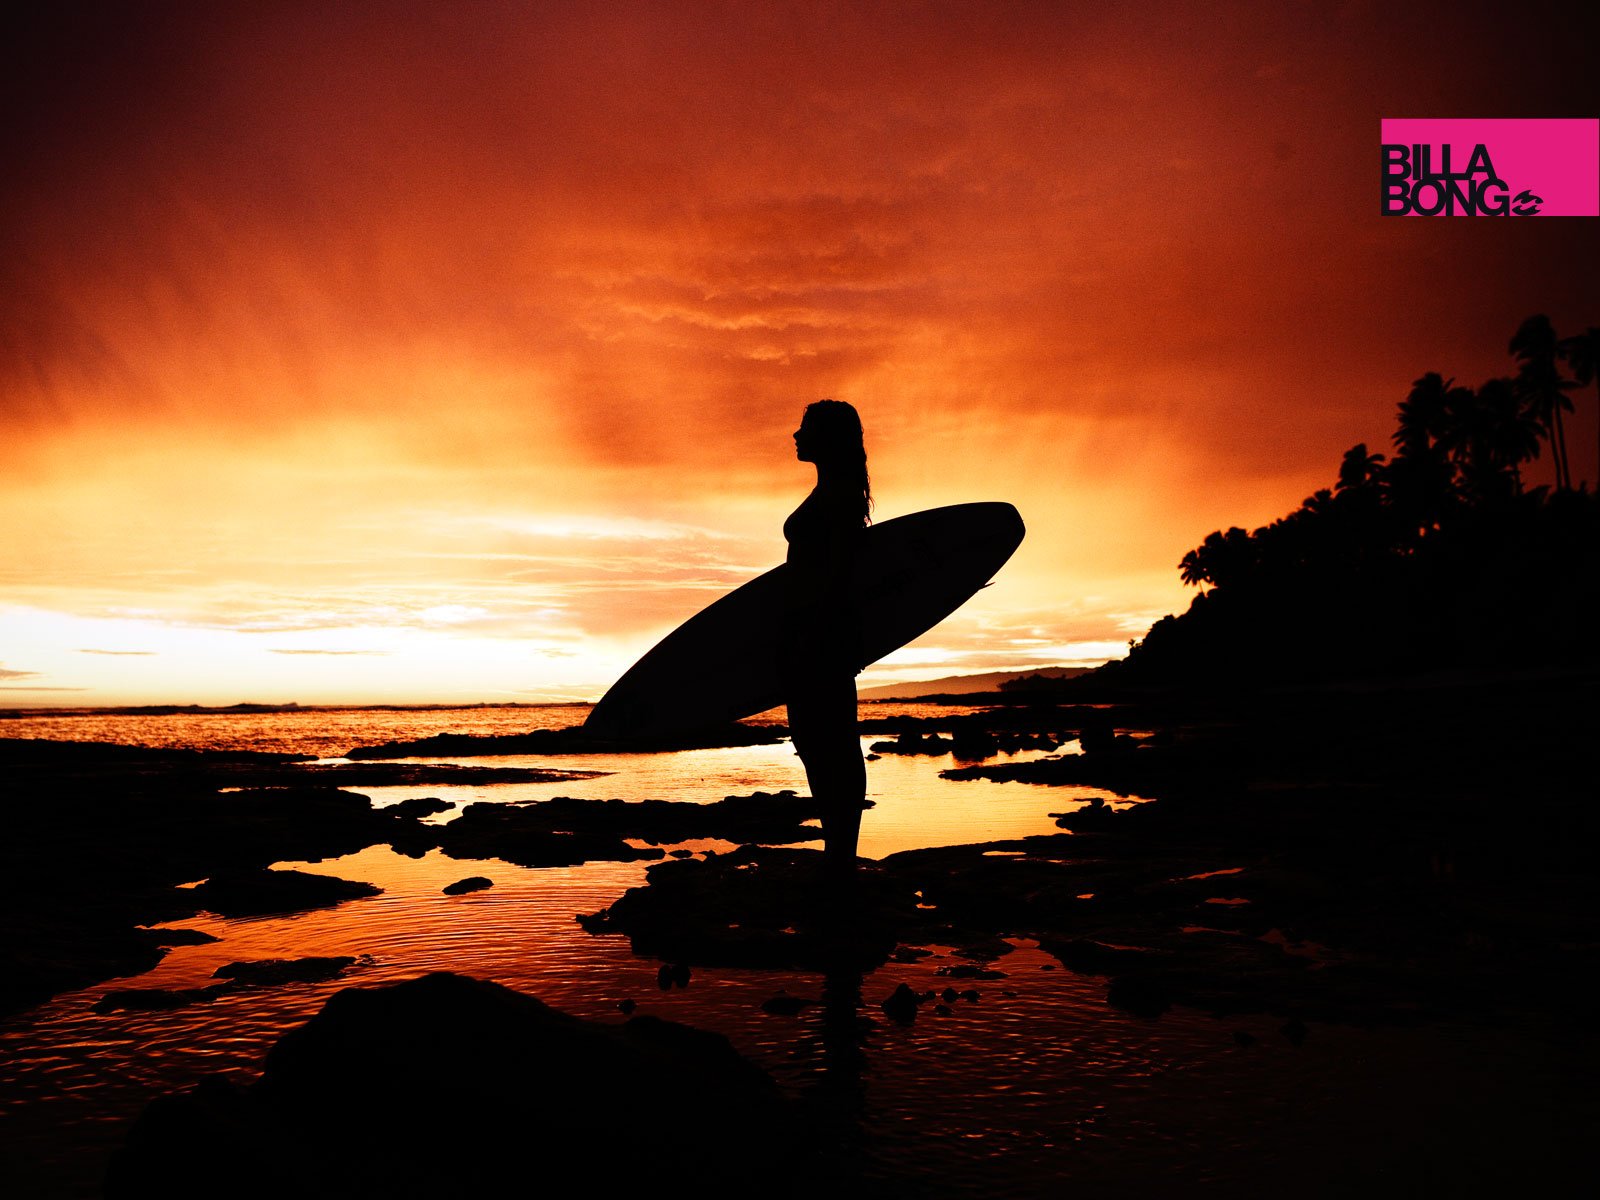 Billabong Surfing Wallpaper - Sunset Surfing Backgrounds - HD Wallpaper 